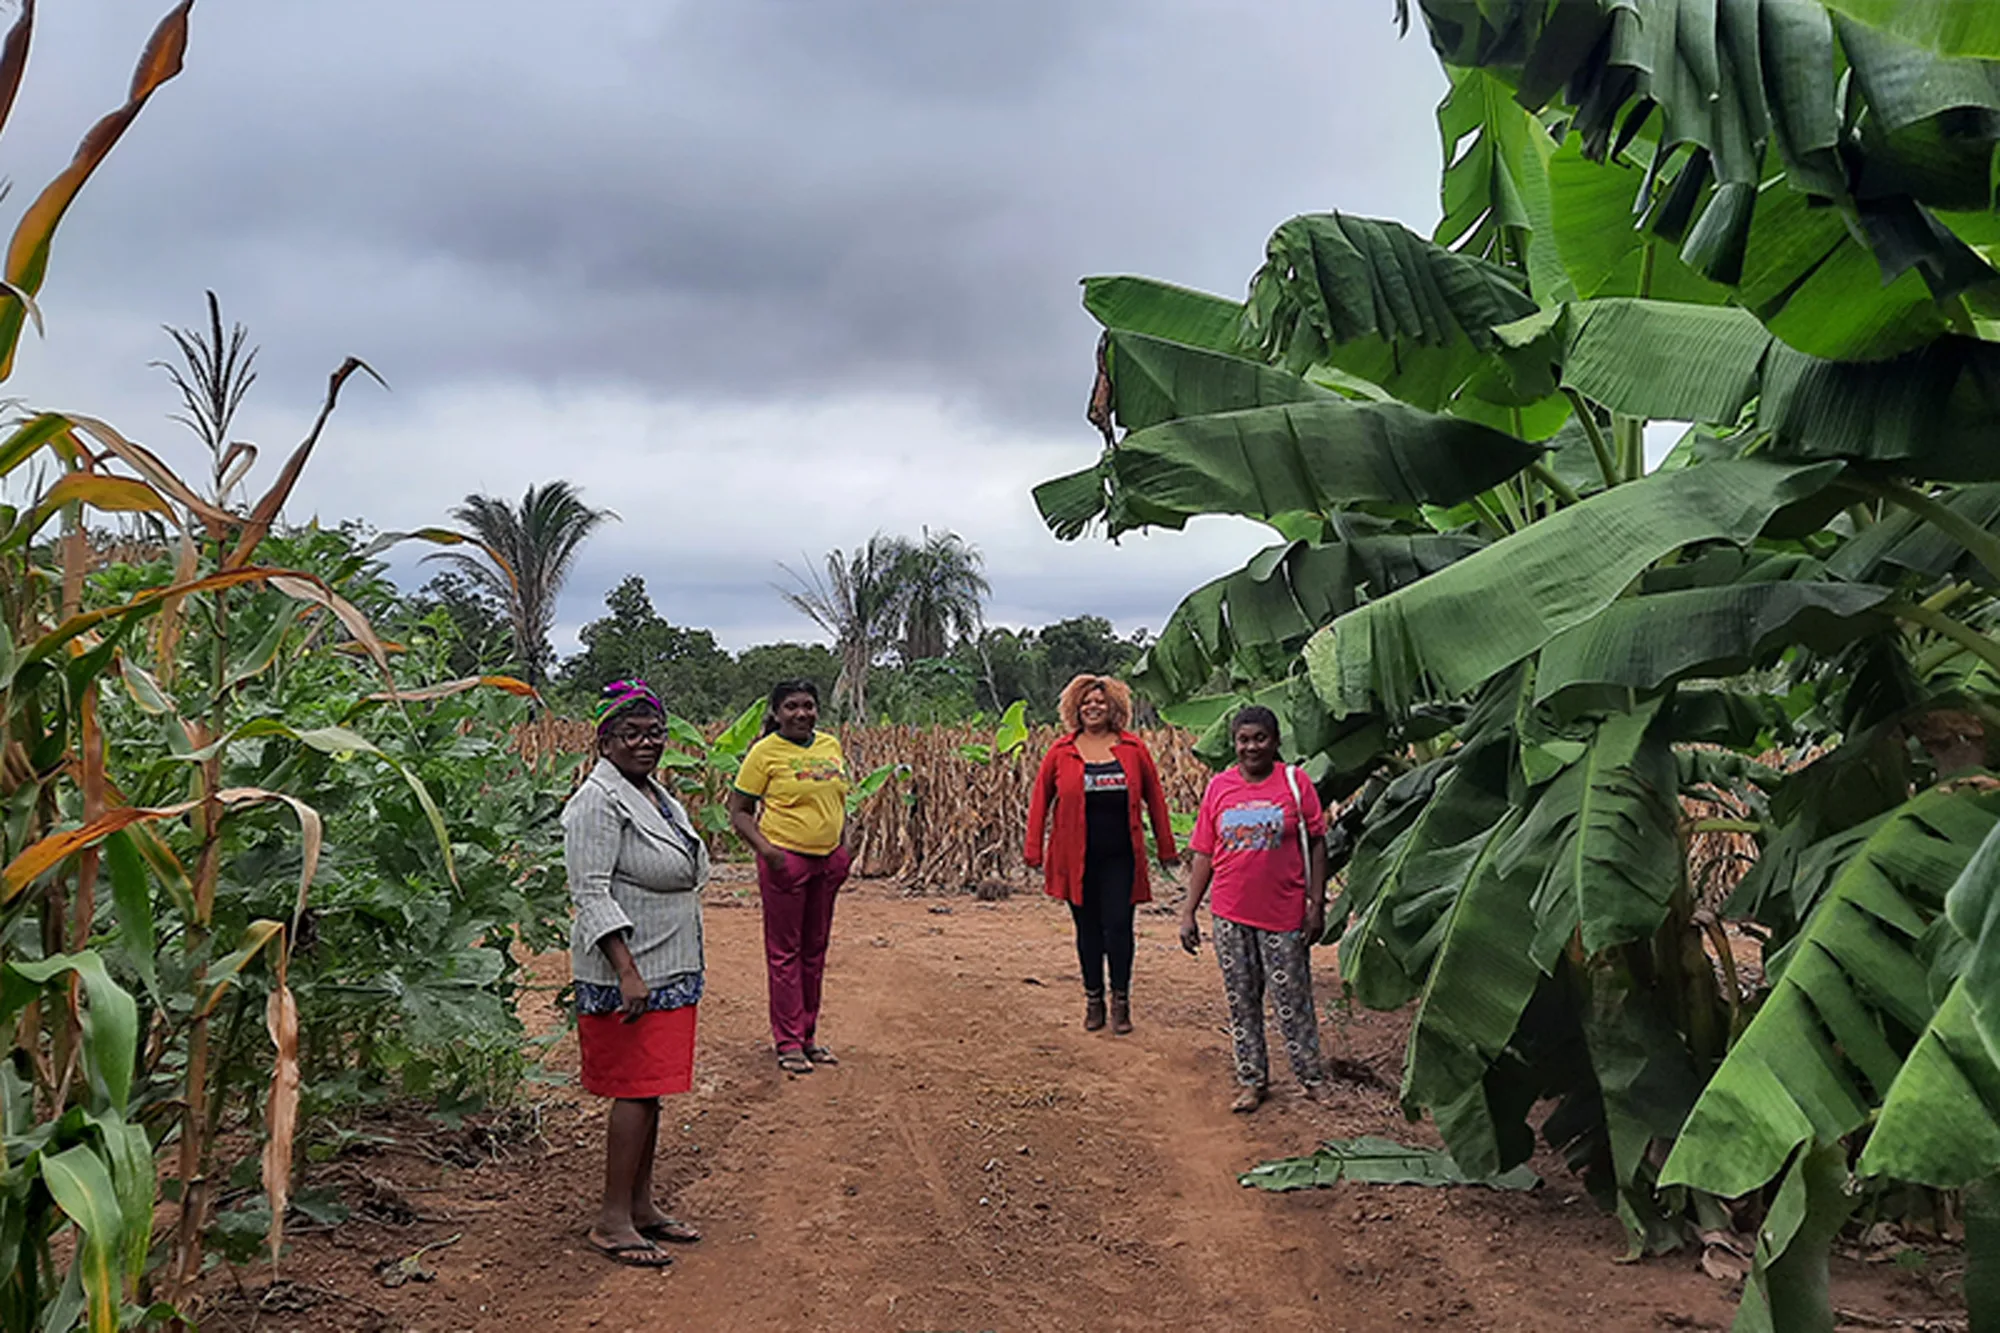 Técnicas tradicionais de cultivo são utilizadas por pequenos agricultores e comunidades quilombolas para produzir alimentos sem prejudicar a natureza. — Foto: Acervo pessoal.